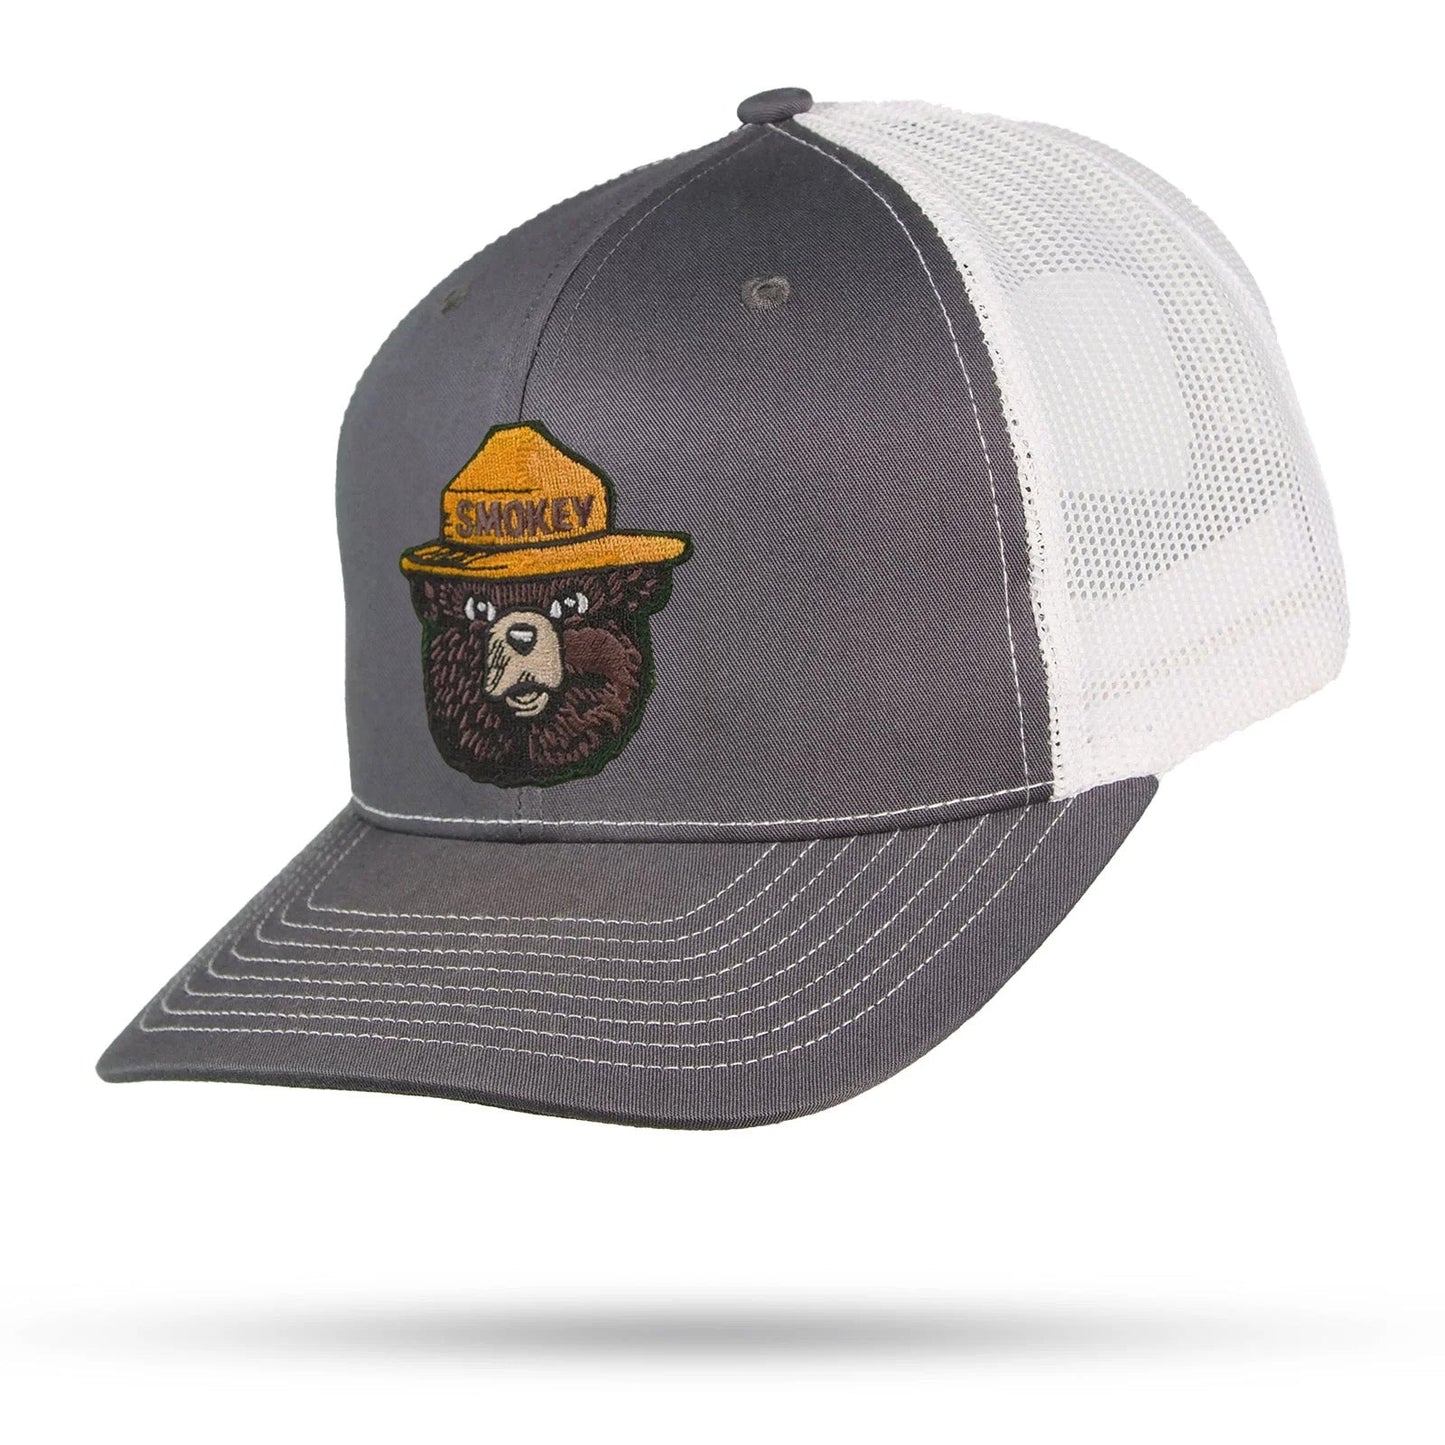 Smokey Bear Trucker Hat - WYR